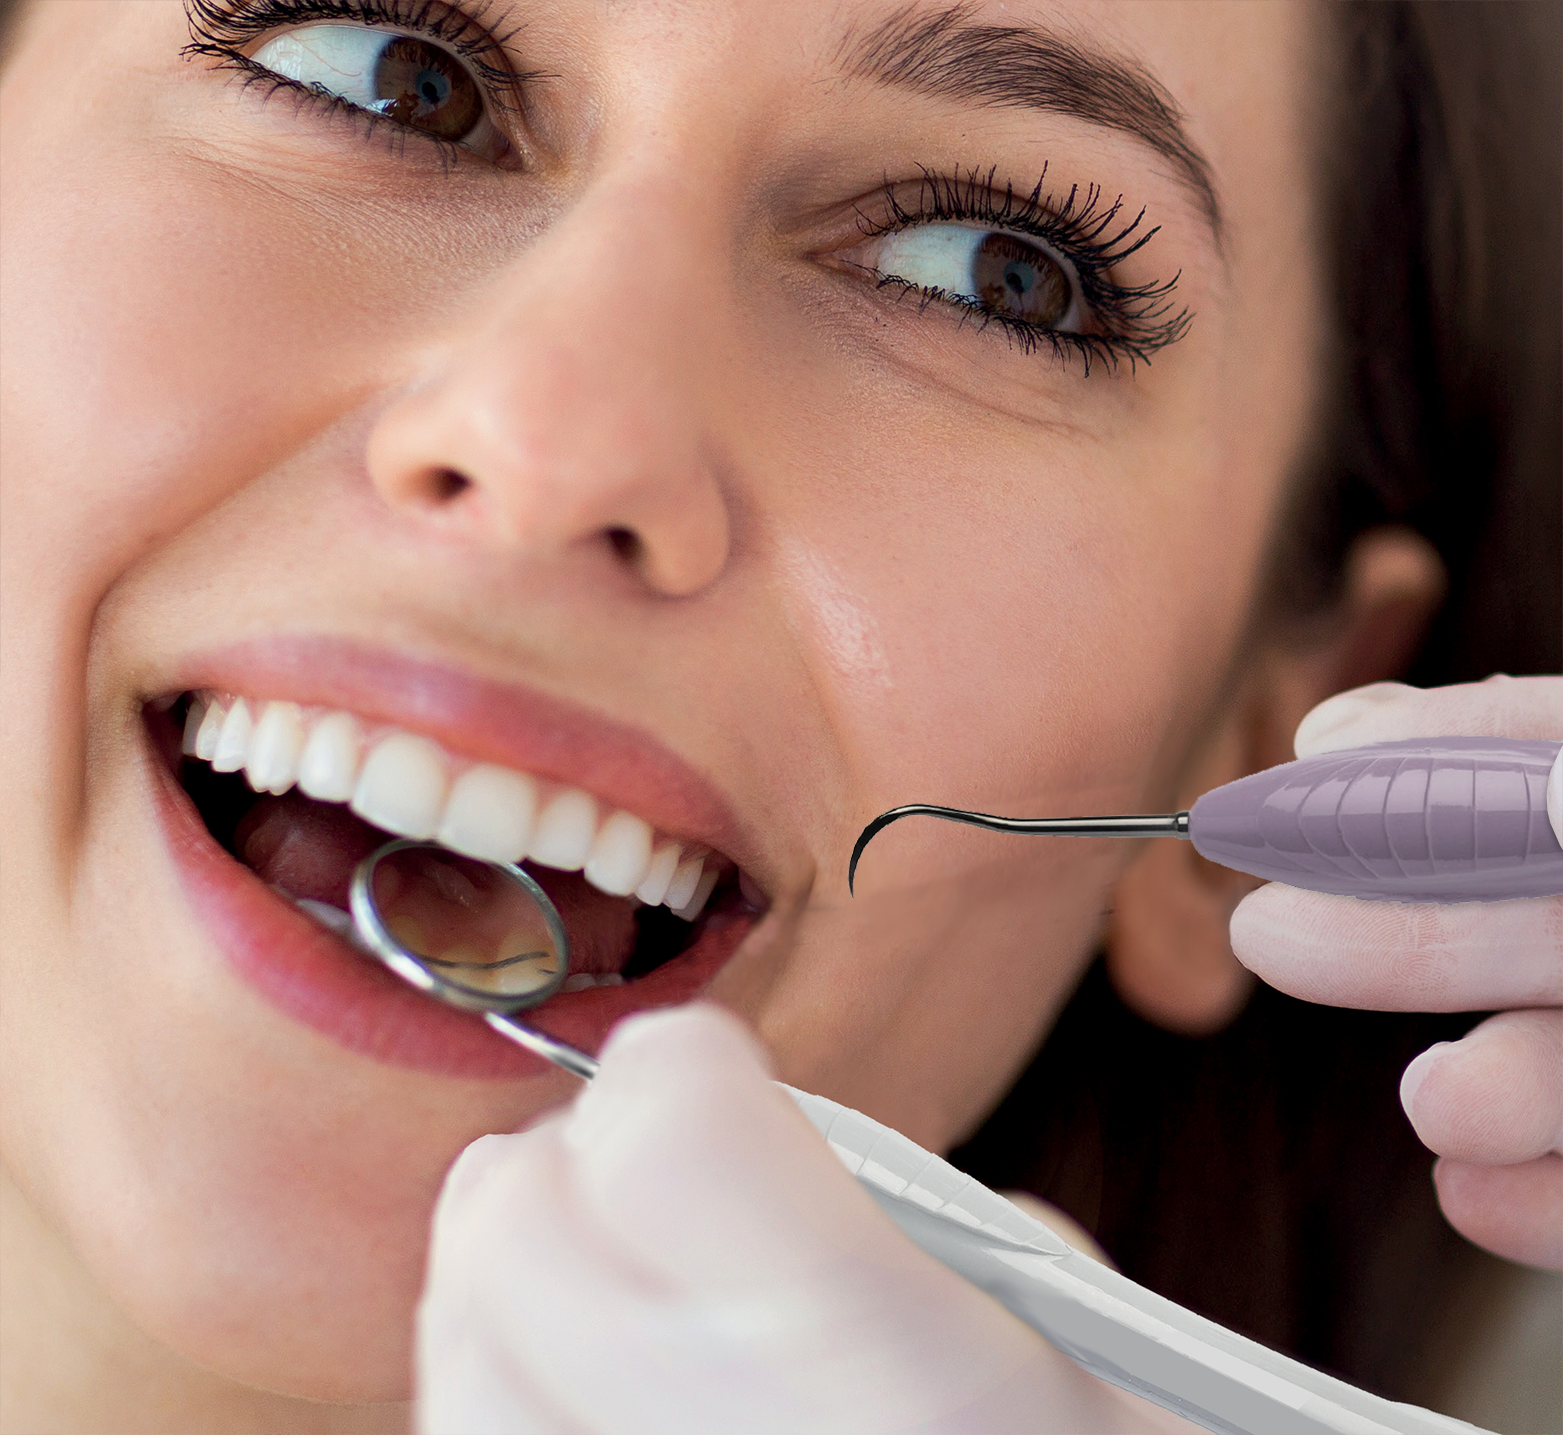 Sharper, Safer, Smarter: Setting a Standard for Excellence in Dental Hygiene